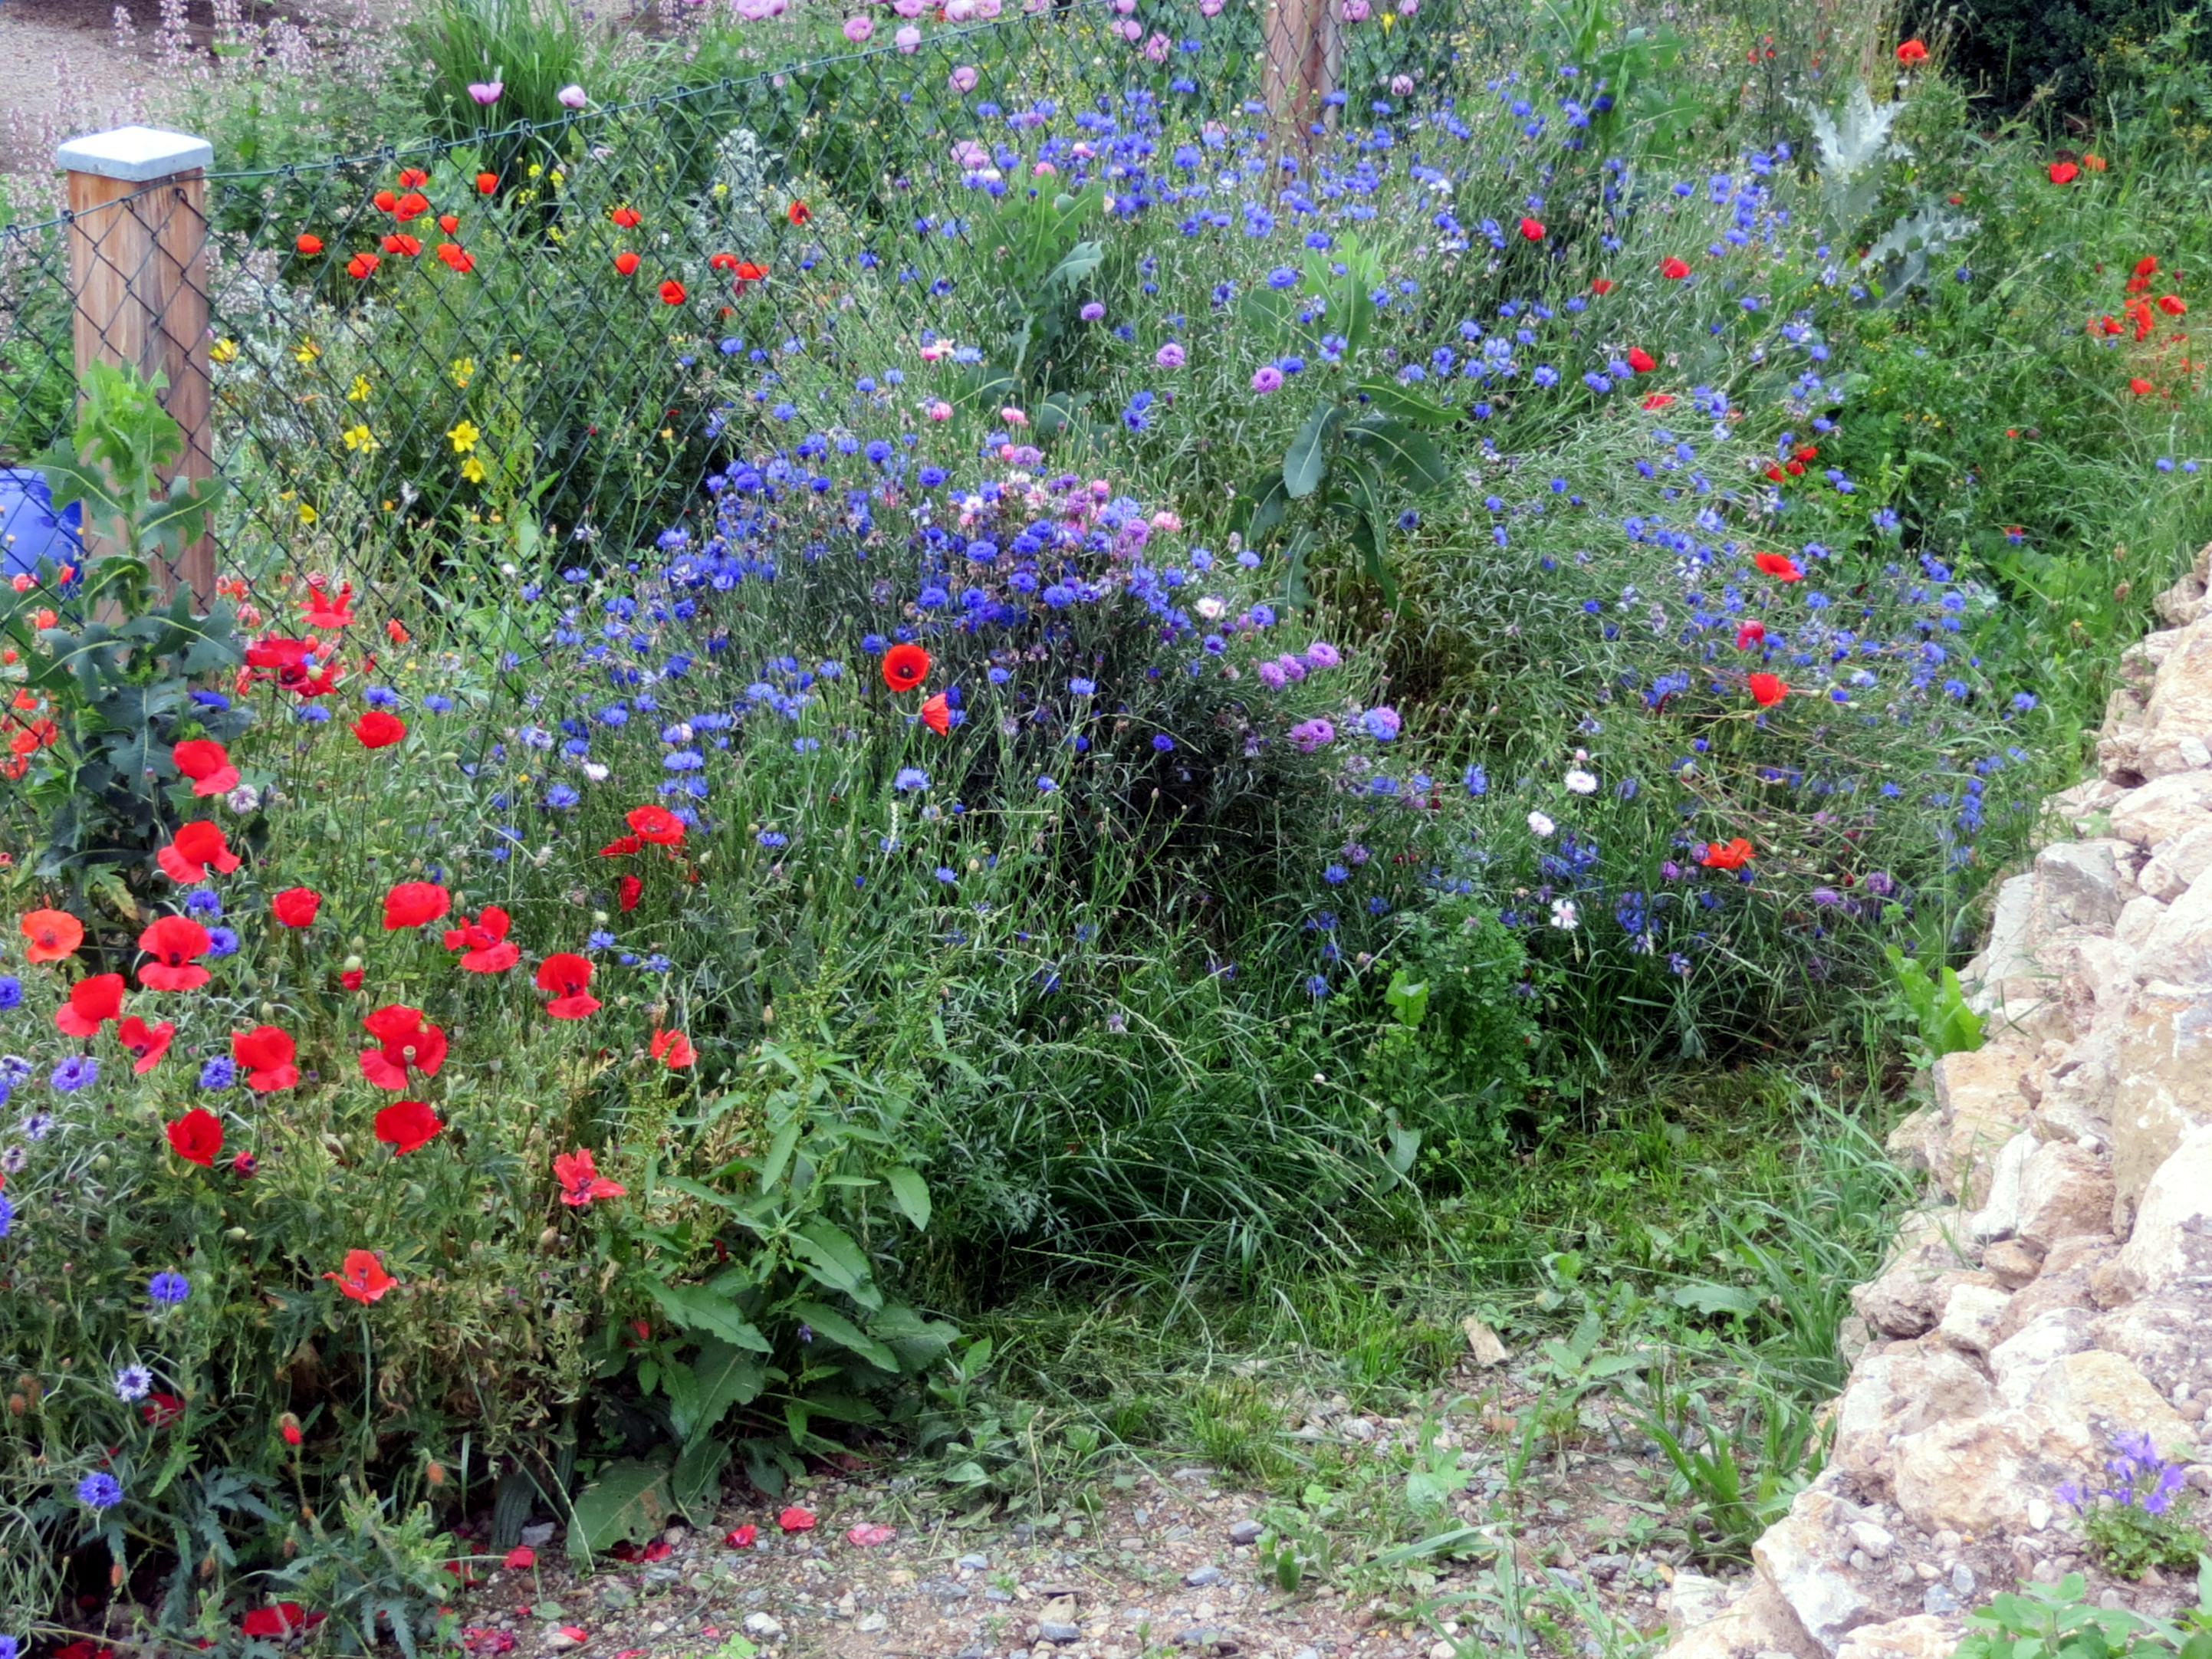 Zaun mit Blühwiese aus Mohn, Kornblumen und anderen Blumen